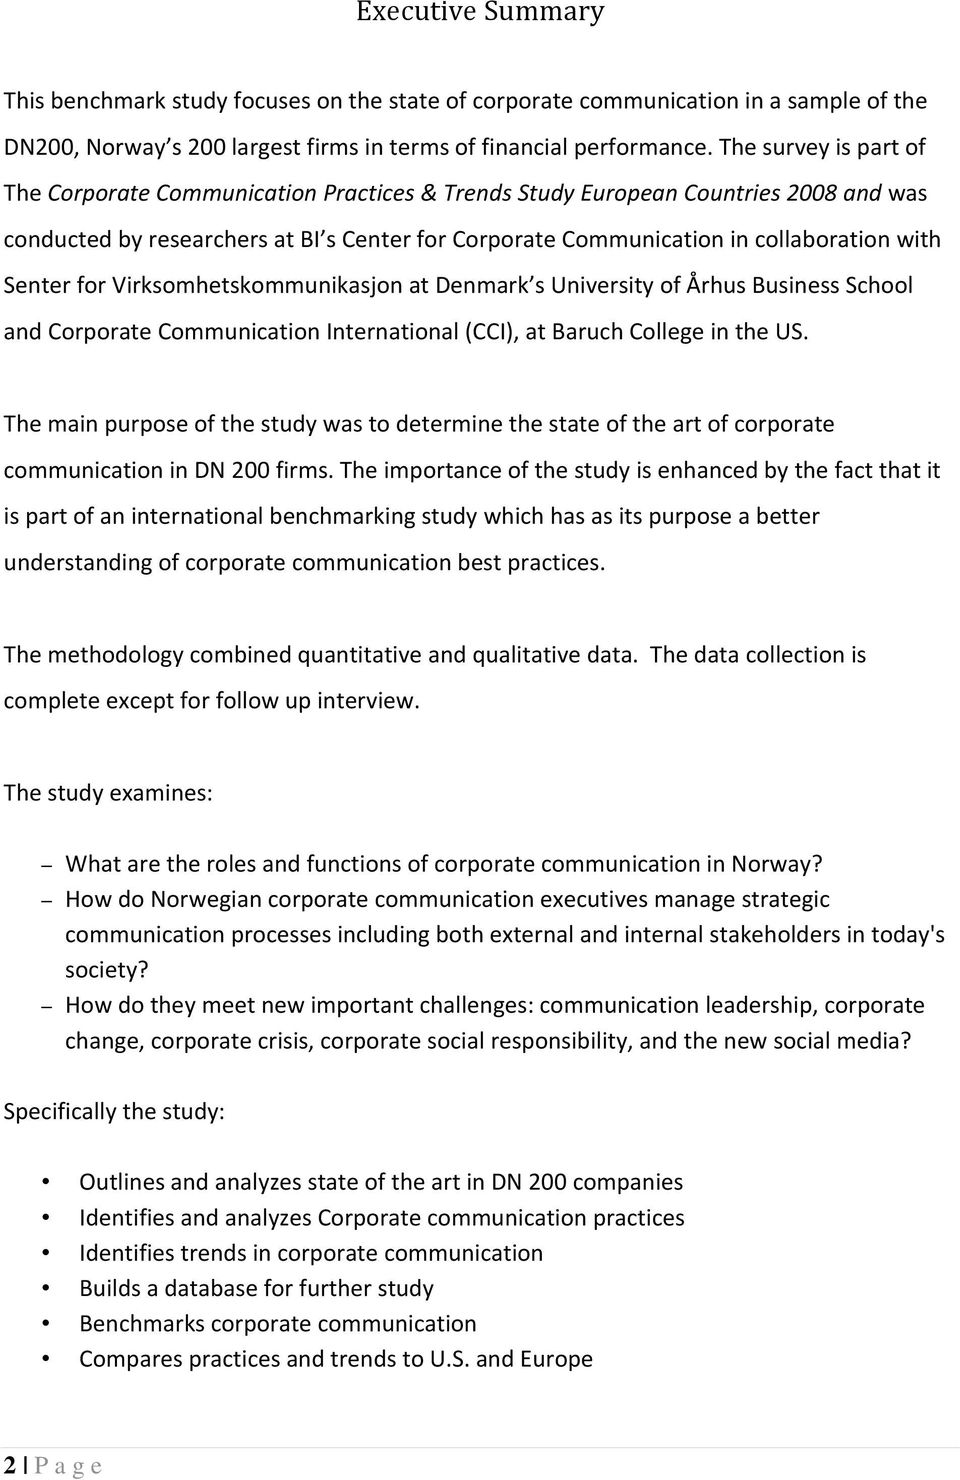 Senter for Virksomhetskommunikasjon at Denmark s University of Århus Business School and Corporate Communication International (CCI), at Baruch College in the US.